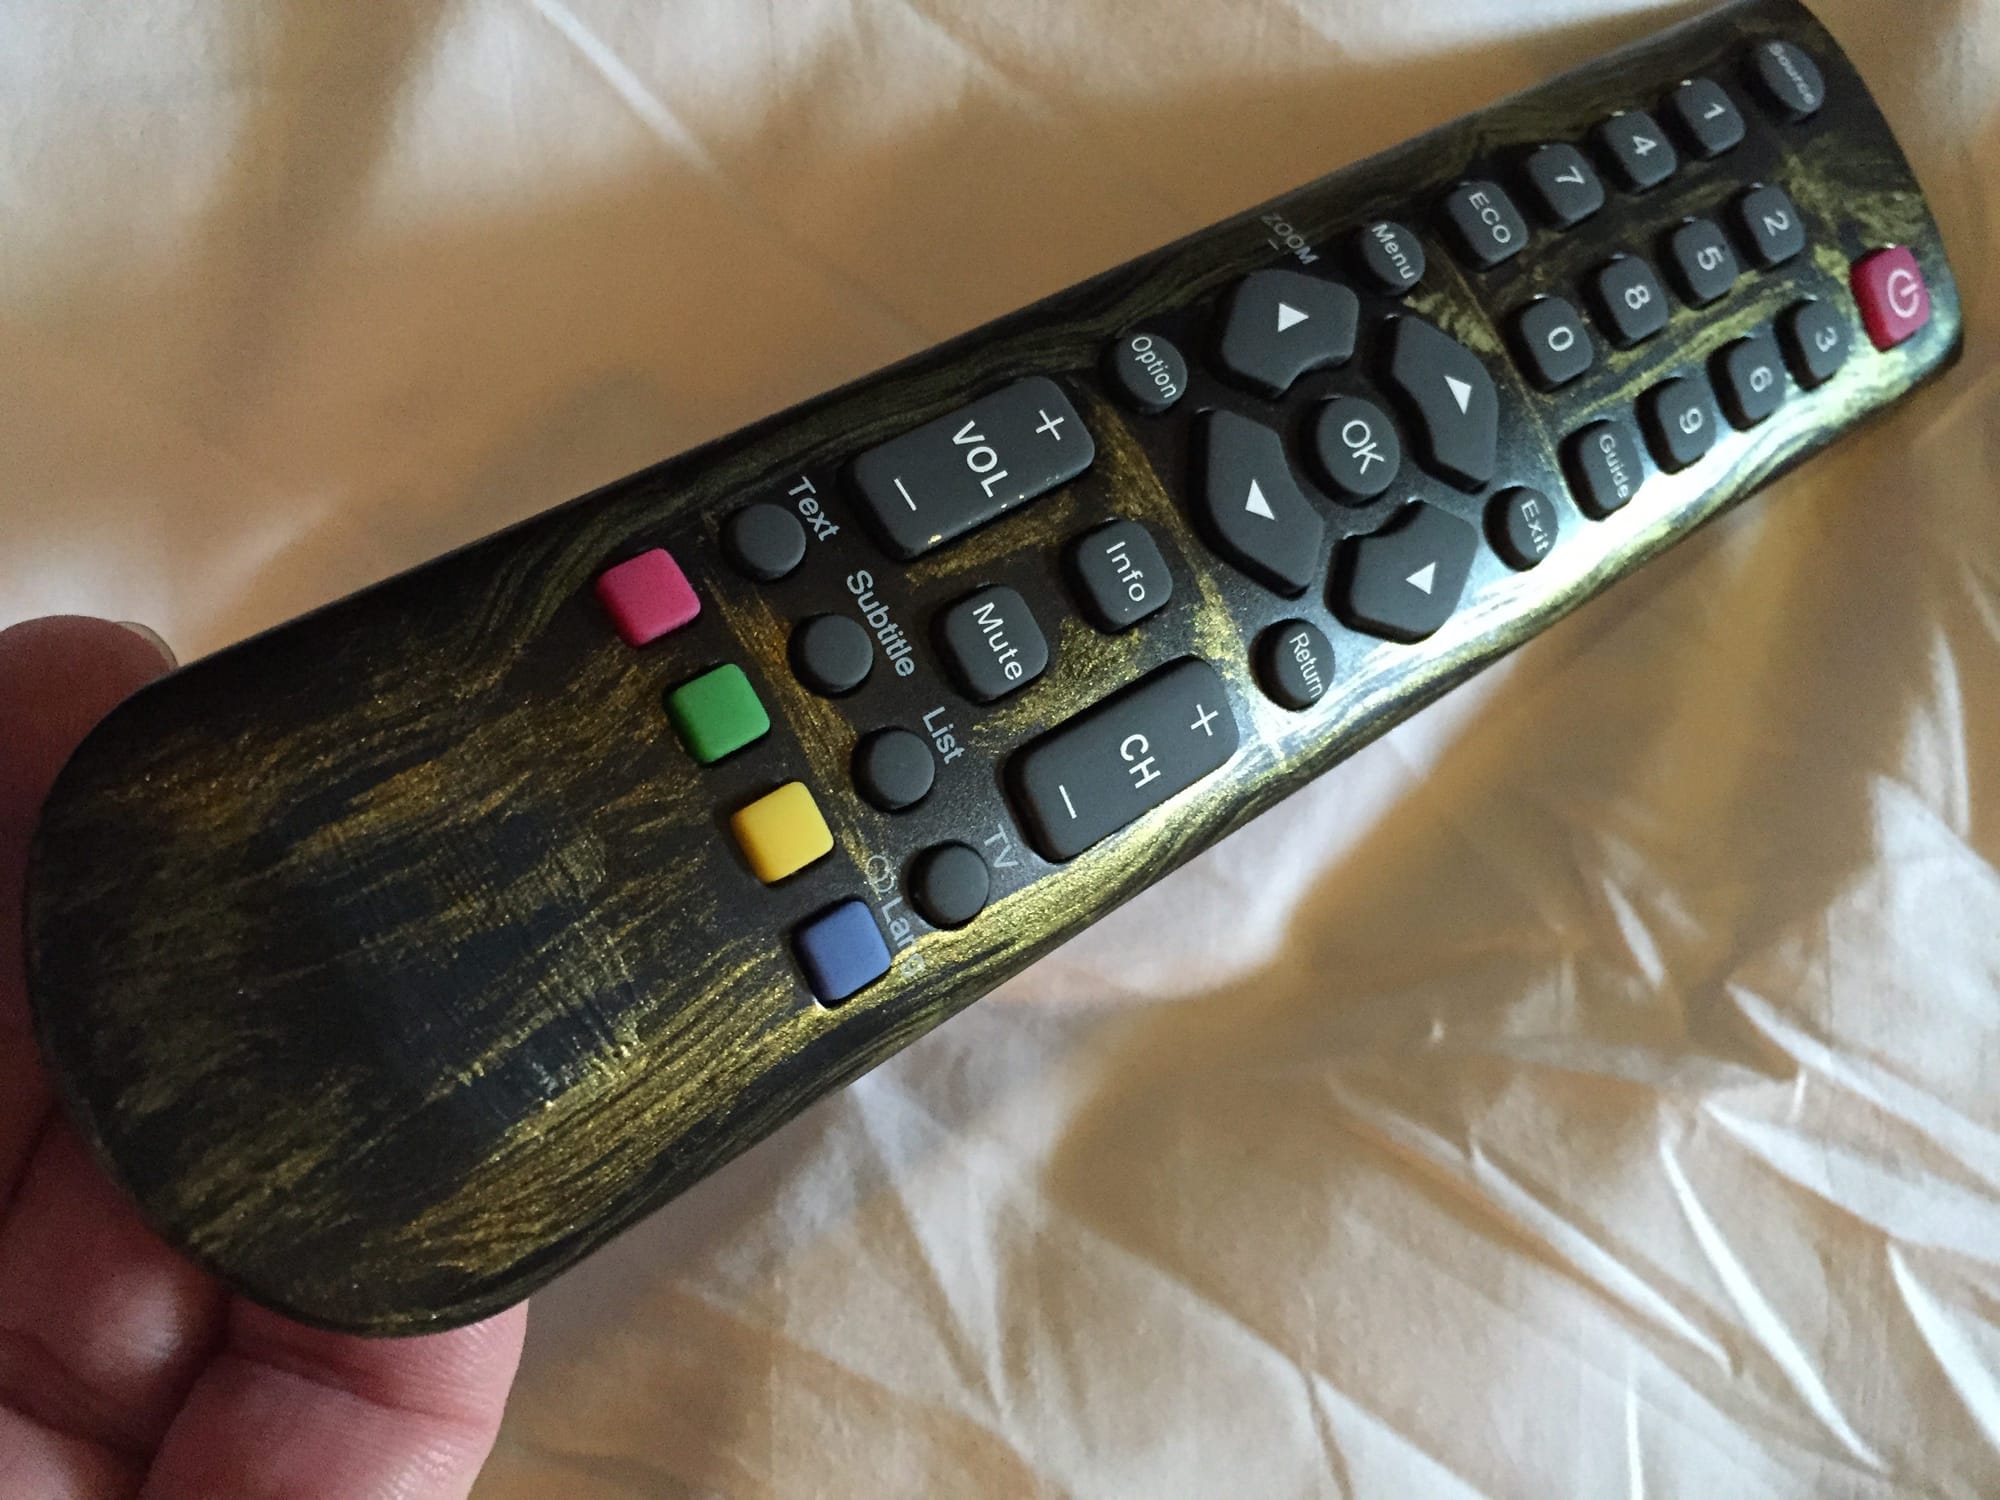 A faux metal TV remote